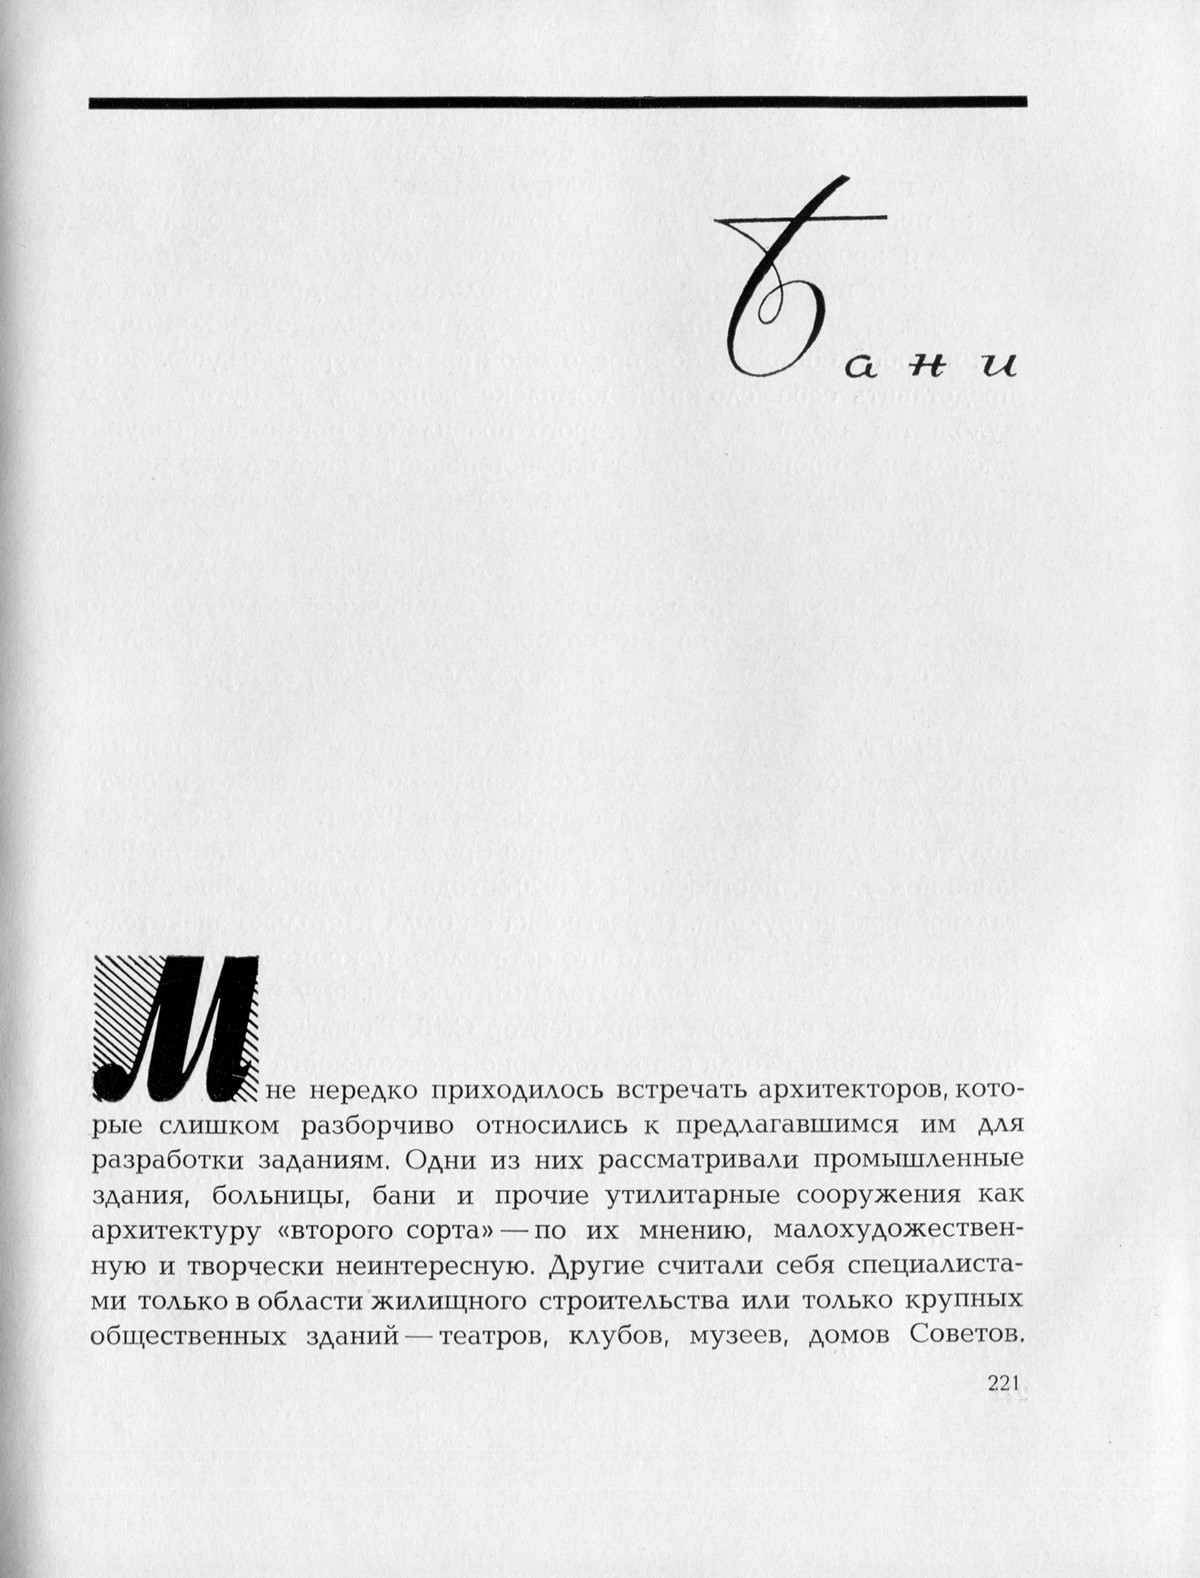 Восьмая глава книги известного советского архитектора Александра Ивановича Гегелло (1891—1965) — Из творческого опыта : Возникновение и развитие архитектурного замысла